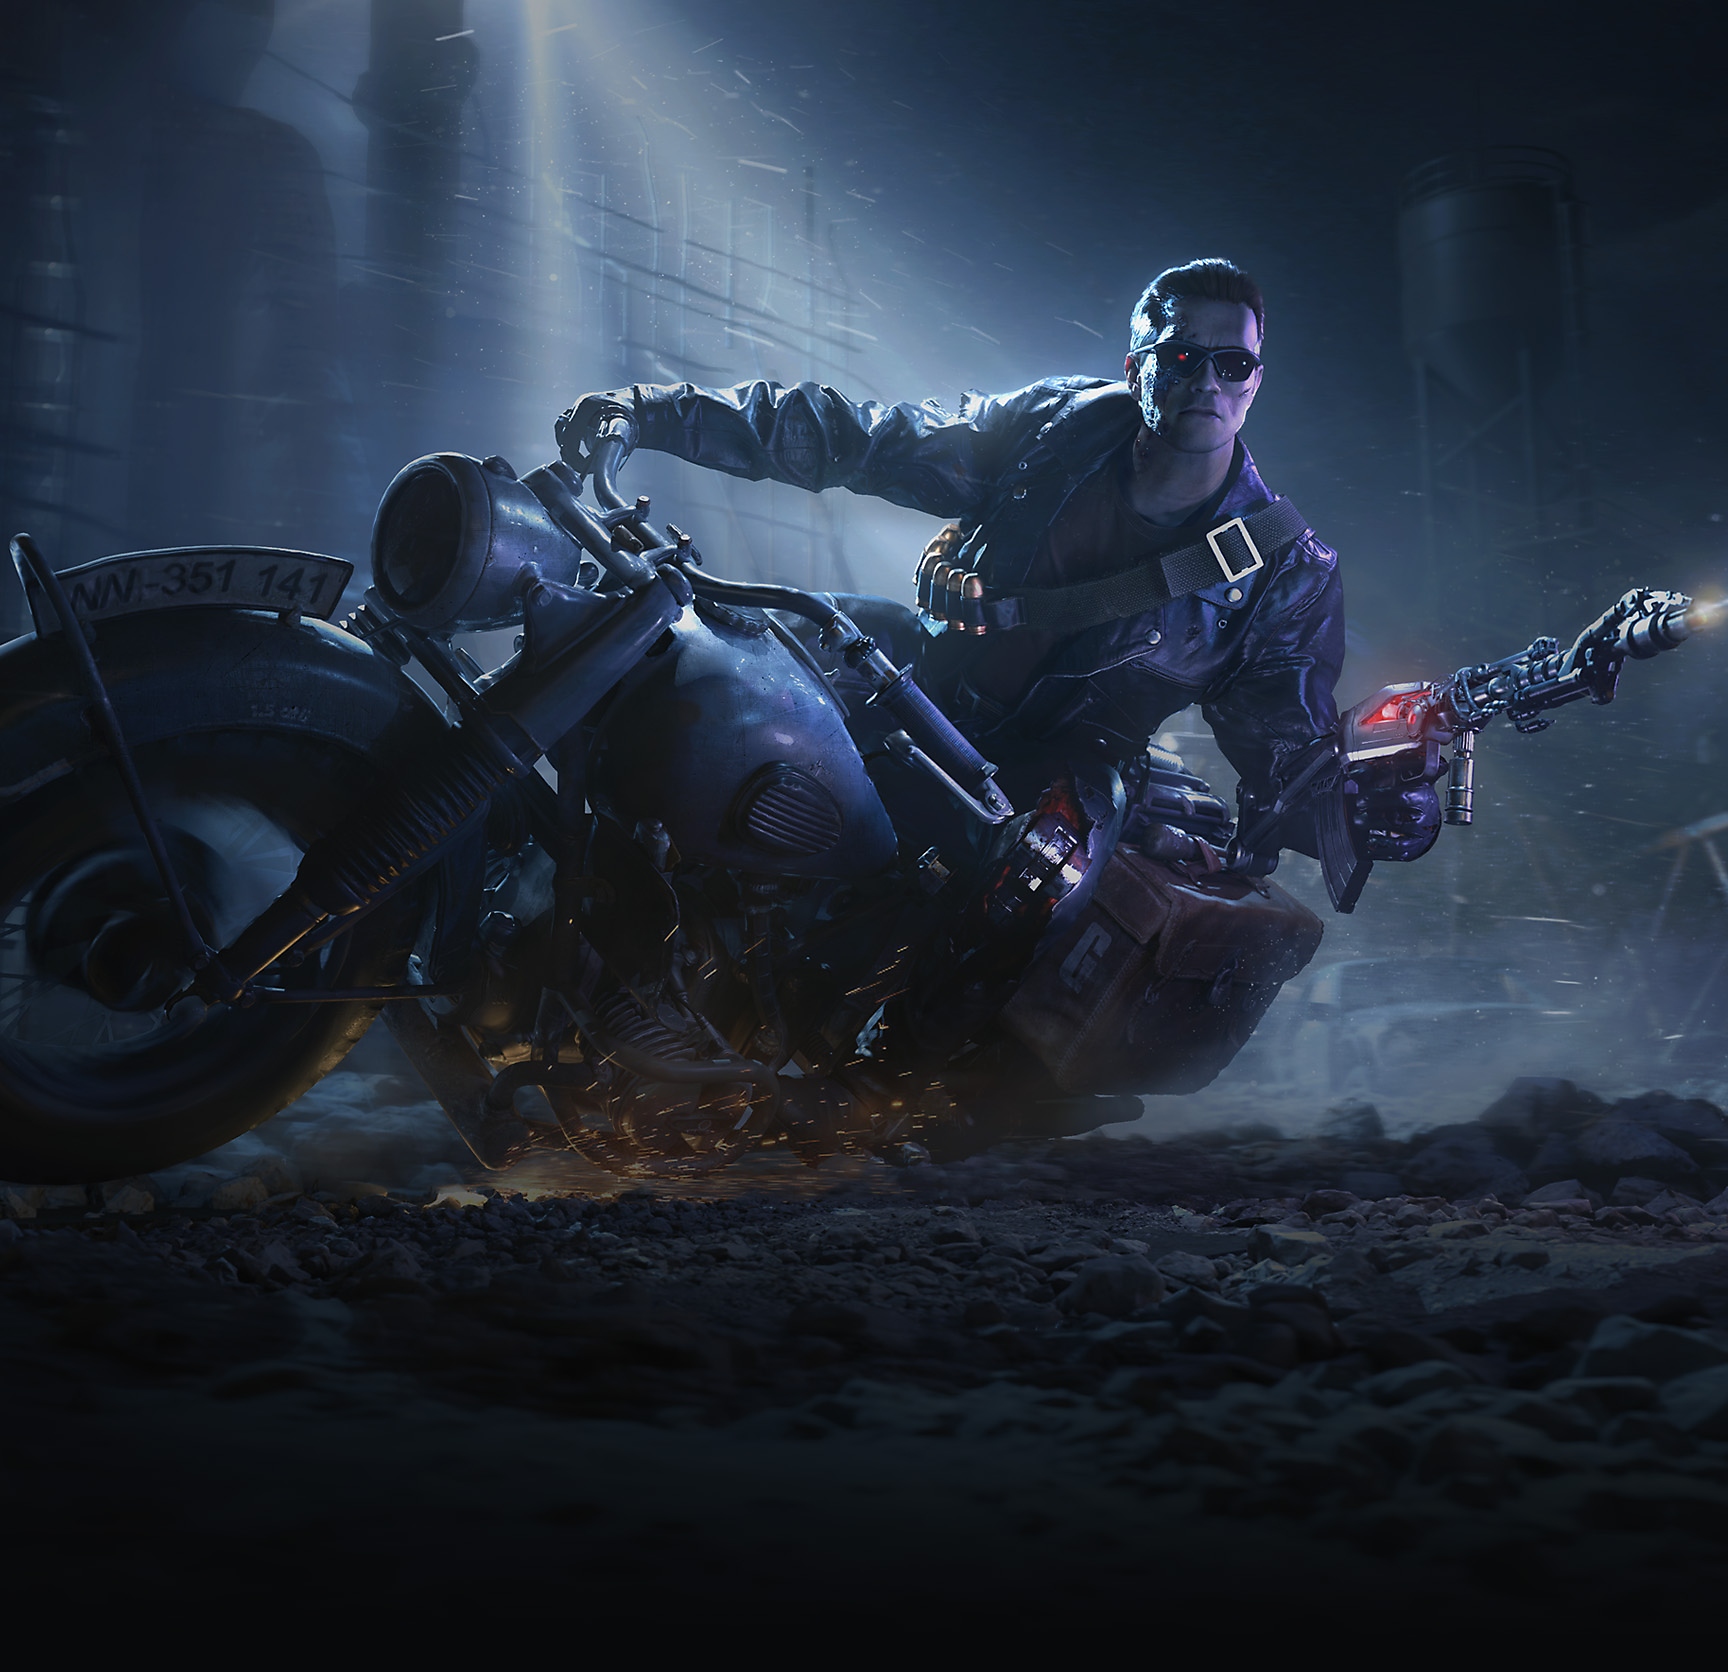 Ilustracija za paket T-800 Limited Time Bundle koja prikazuje Terminatora T-800 na motociklu